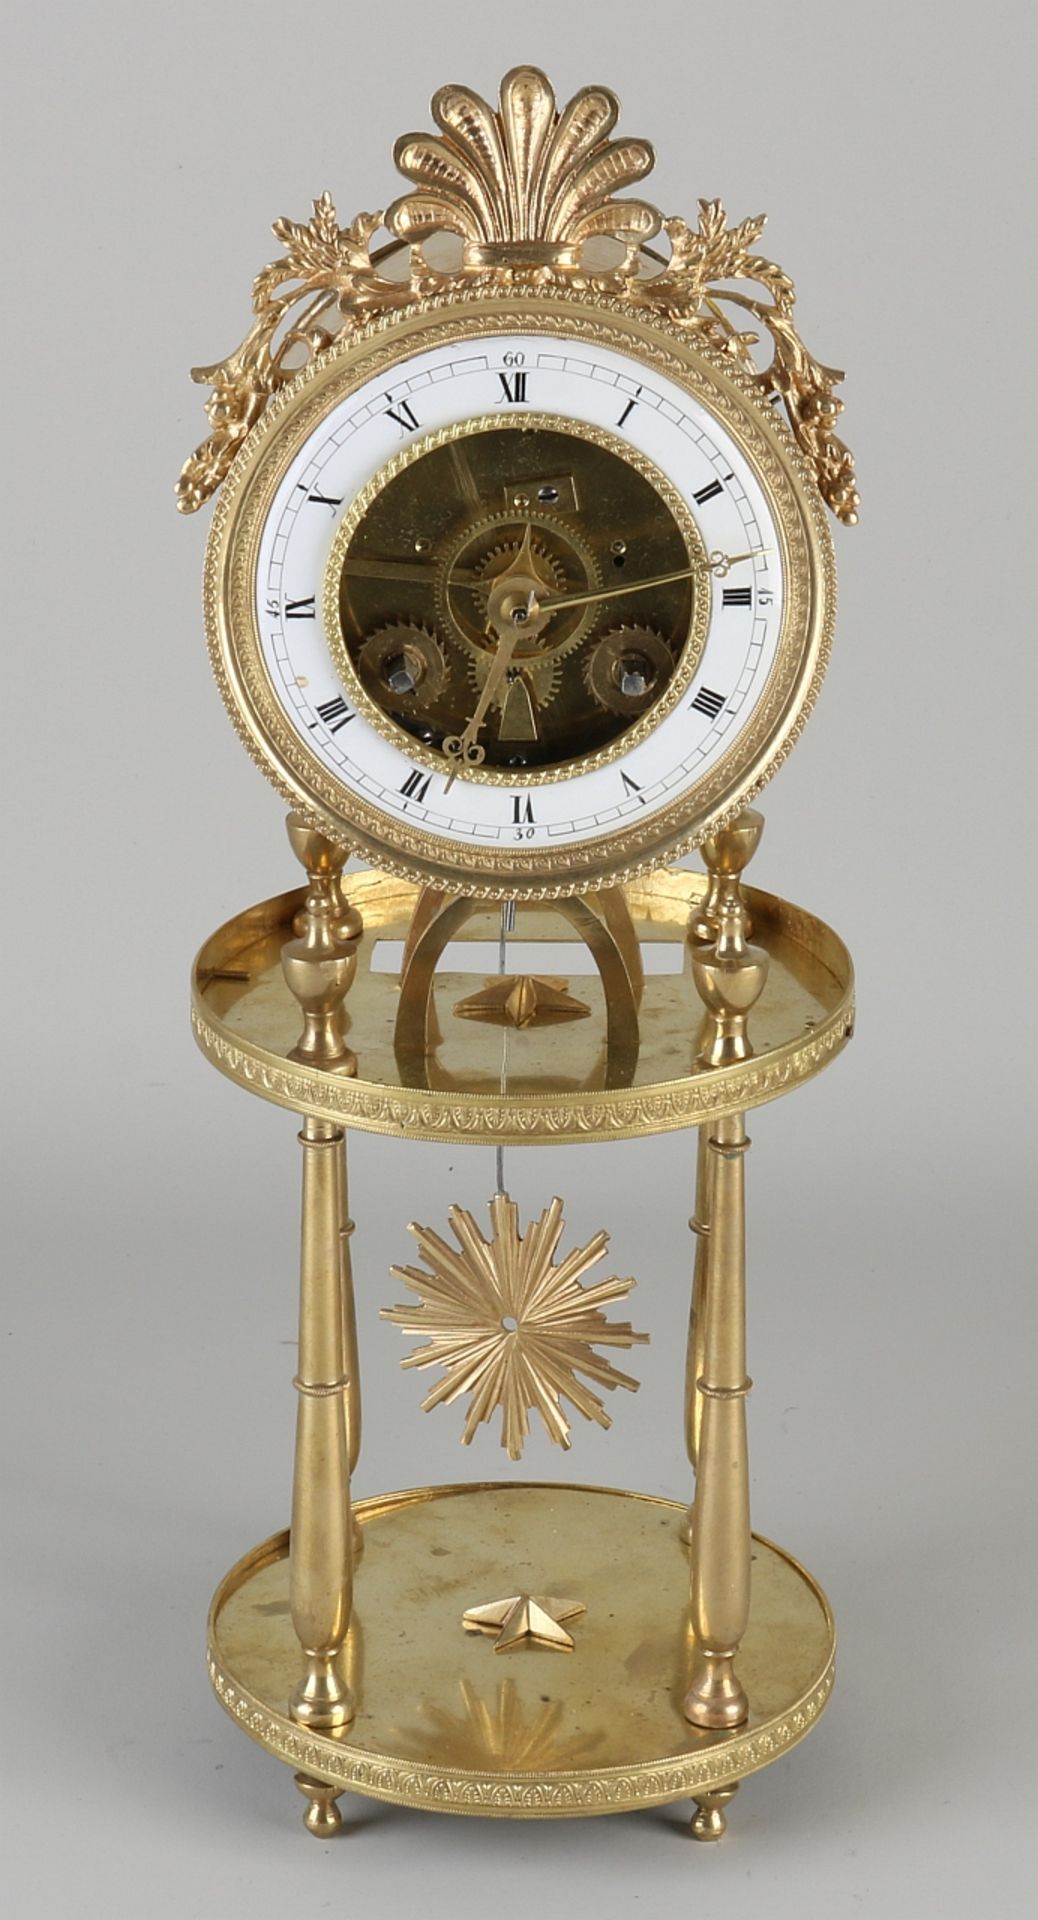 Fire-gilt French skeleton clock, 1800